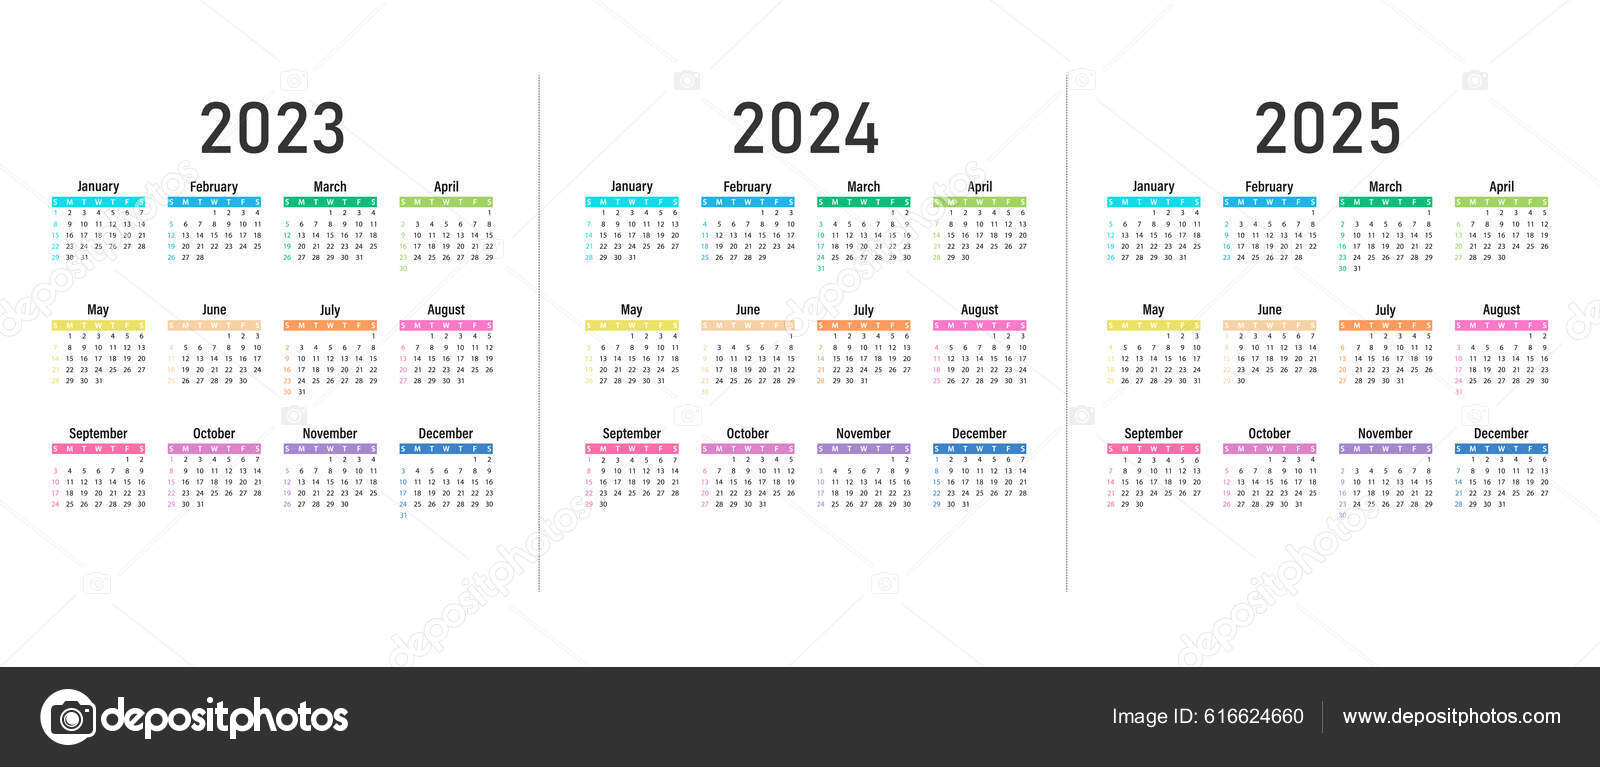 Calendrier mural 2023-2024, 18 mois par page, calendrier mural 2023-2024,  calendrier mural mensuel de juillet 2023 à décembre 2024, calendrier mural